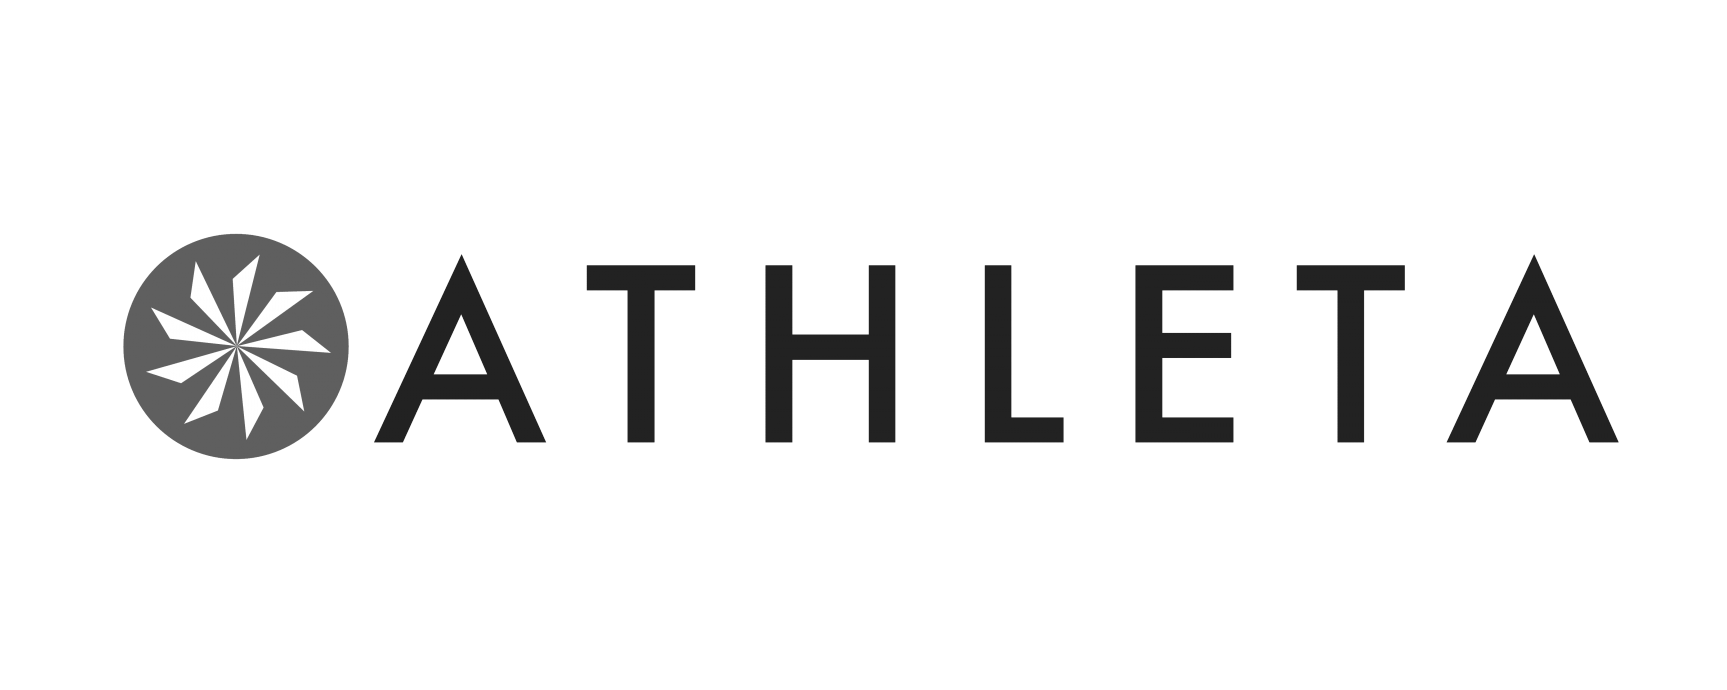 Athleta-logo-1536x1059-2116755224.png